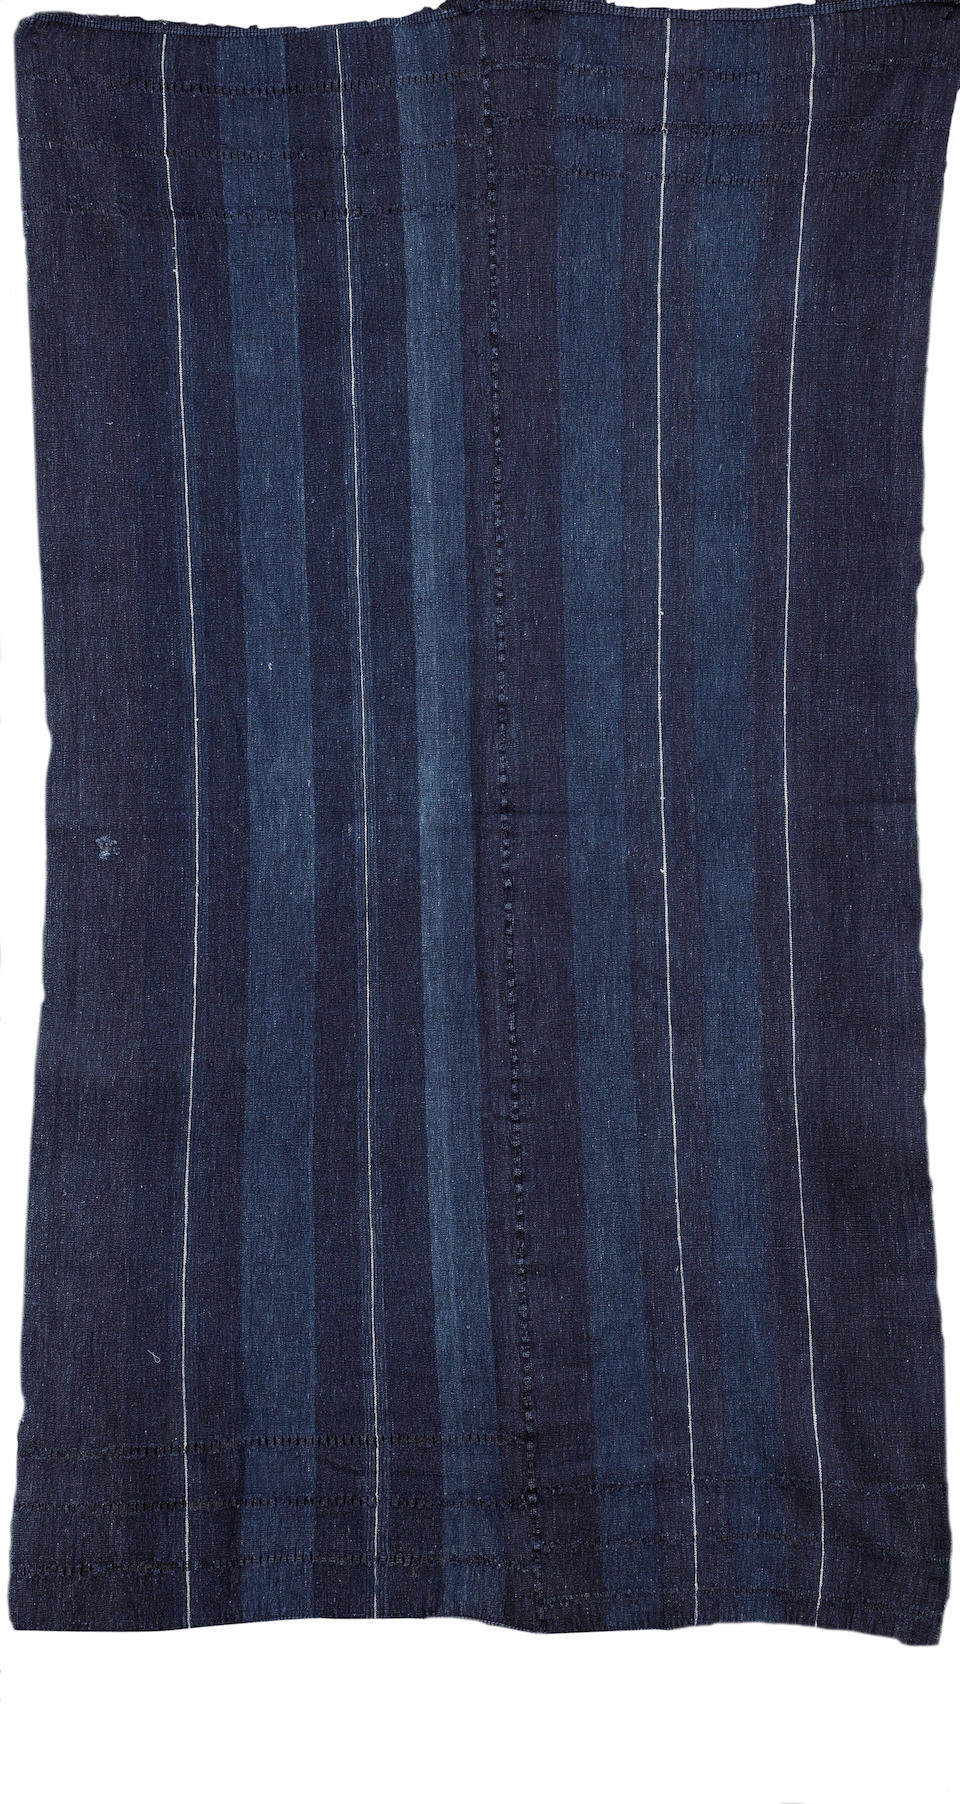 Bonhams : Two shawls Nigeria 160 x 92cm and 198 x 106cm 2